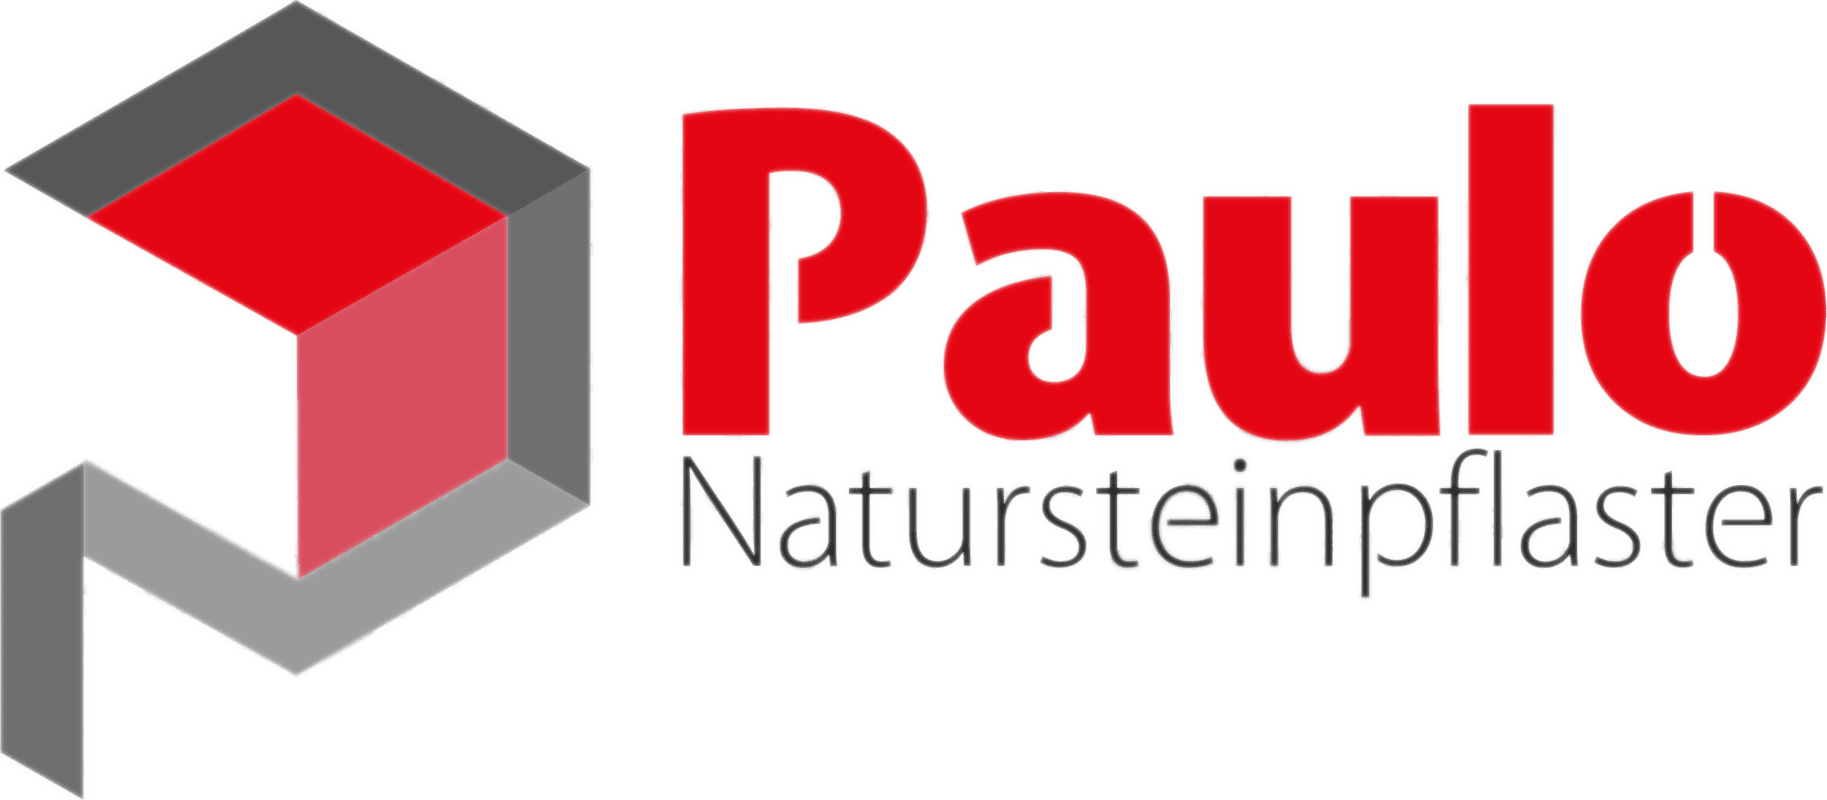 Paulo Natursteinpflaster